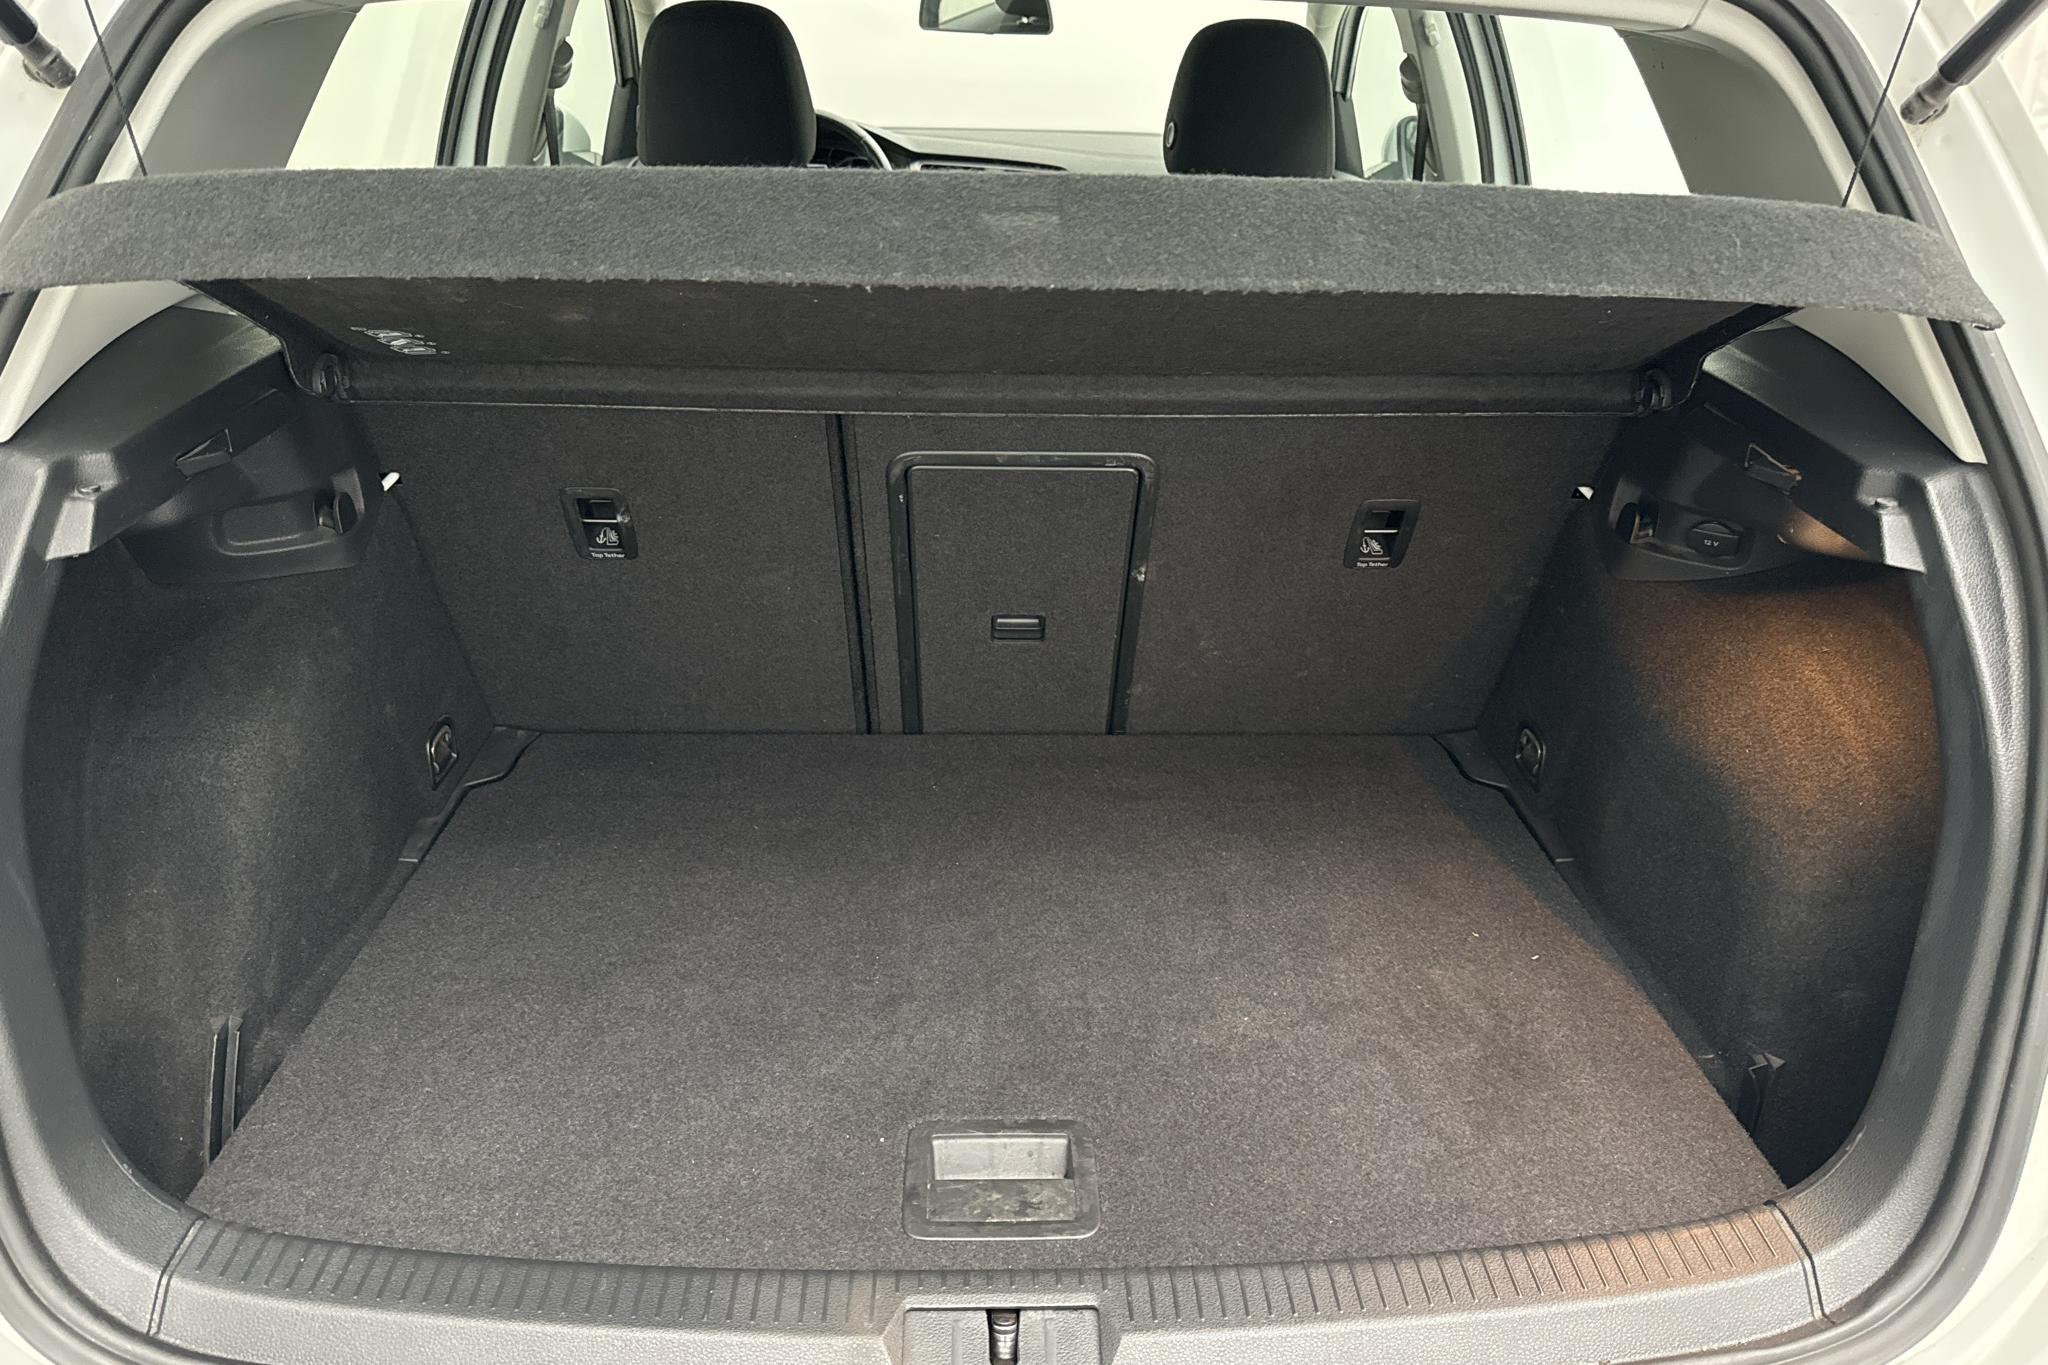 VW Golf VII 1.2 TSI 5dr (105hk) - 52 410 km - Manual - white - 2015